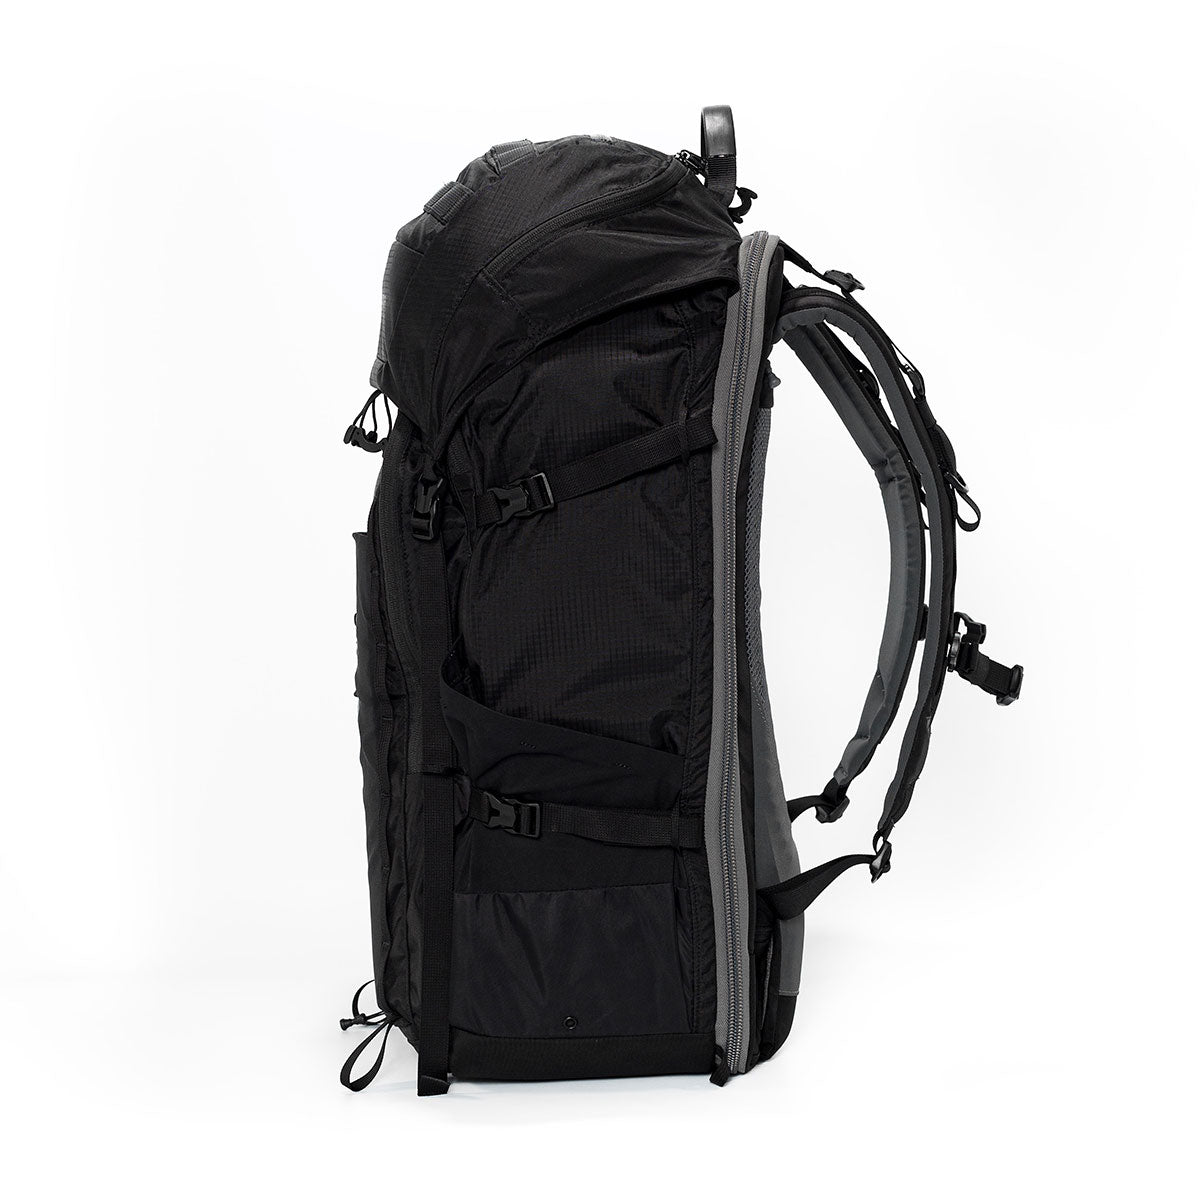 Atlas Adventure Large Backpack (Black)